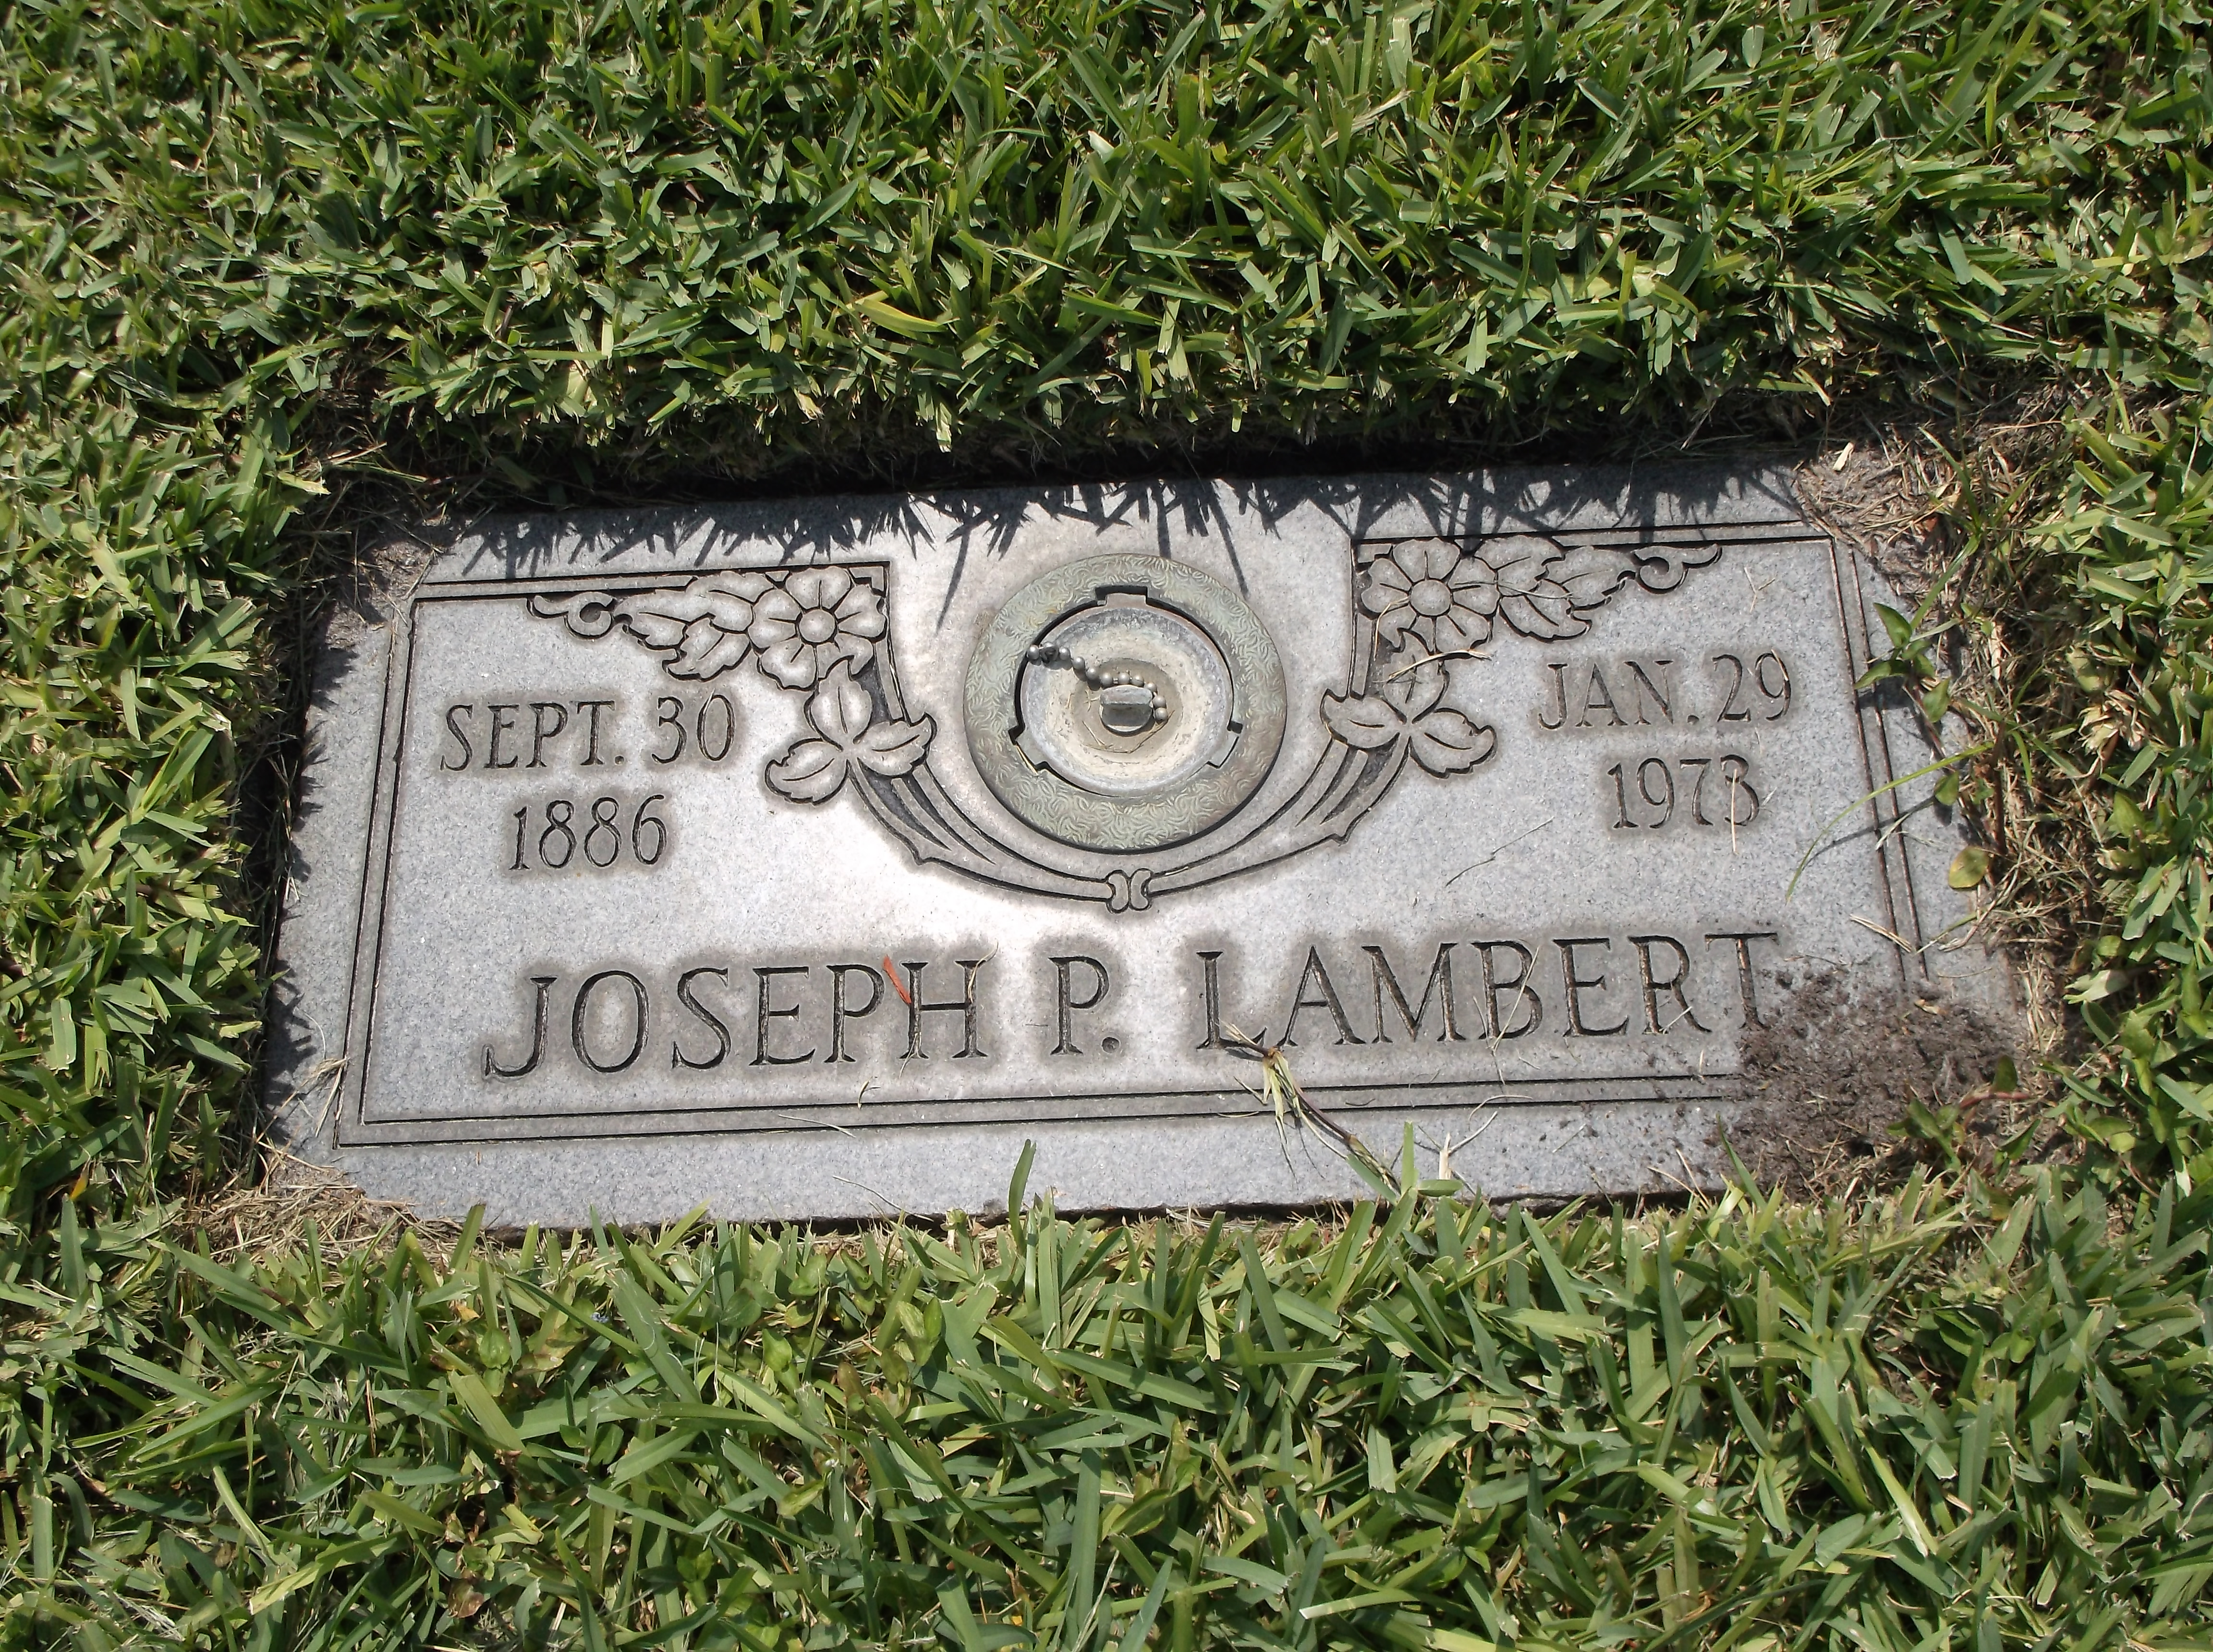 Joseph P Lambert